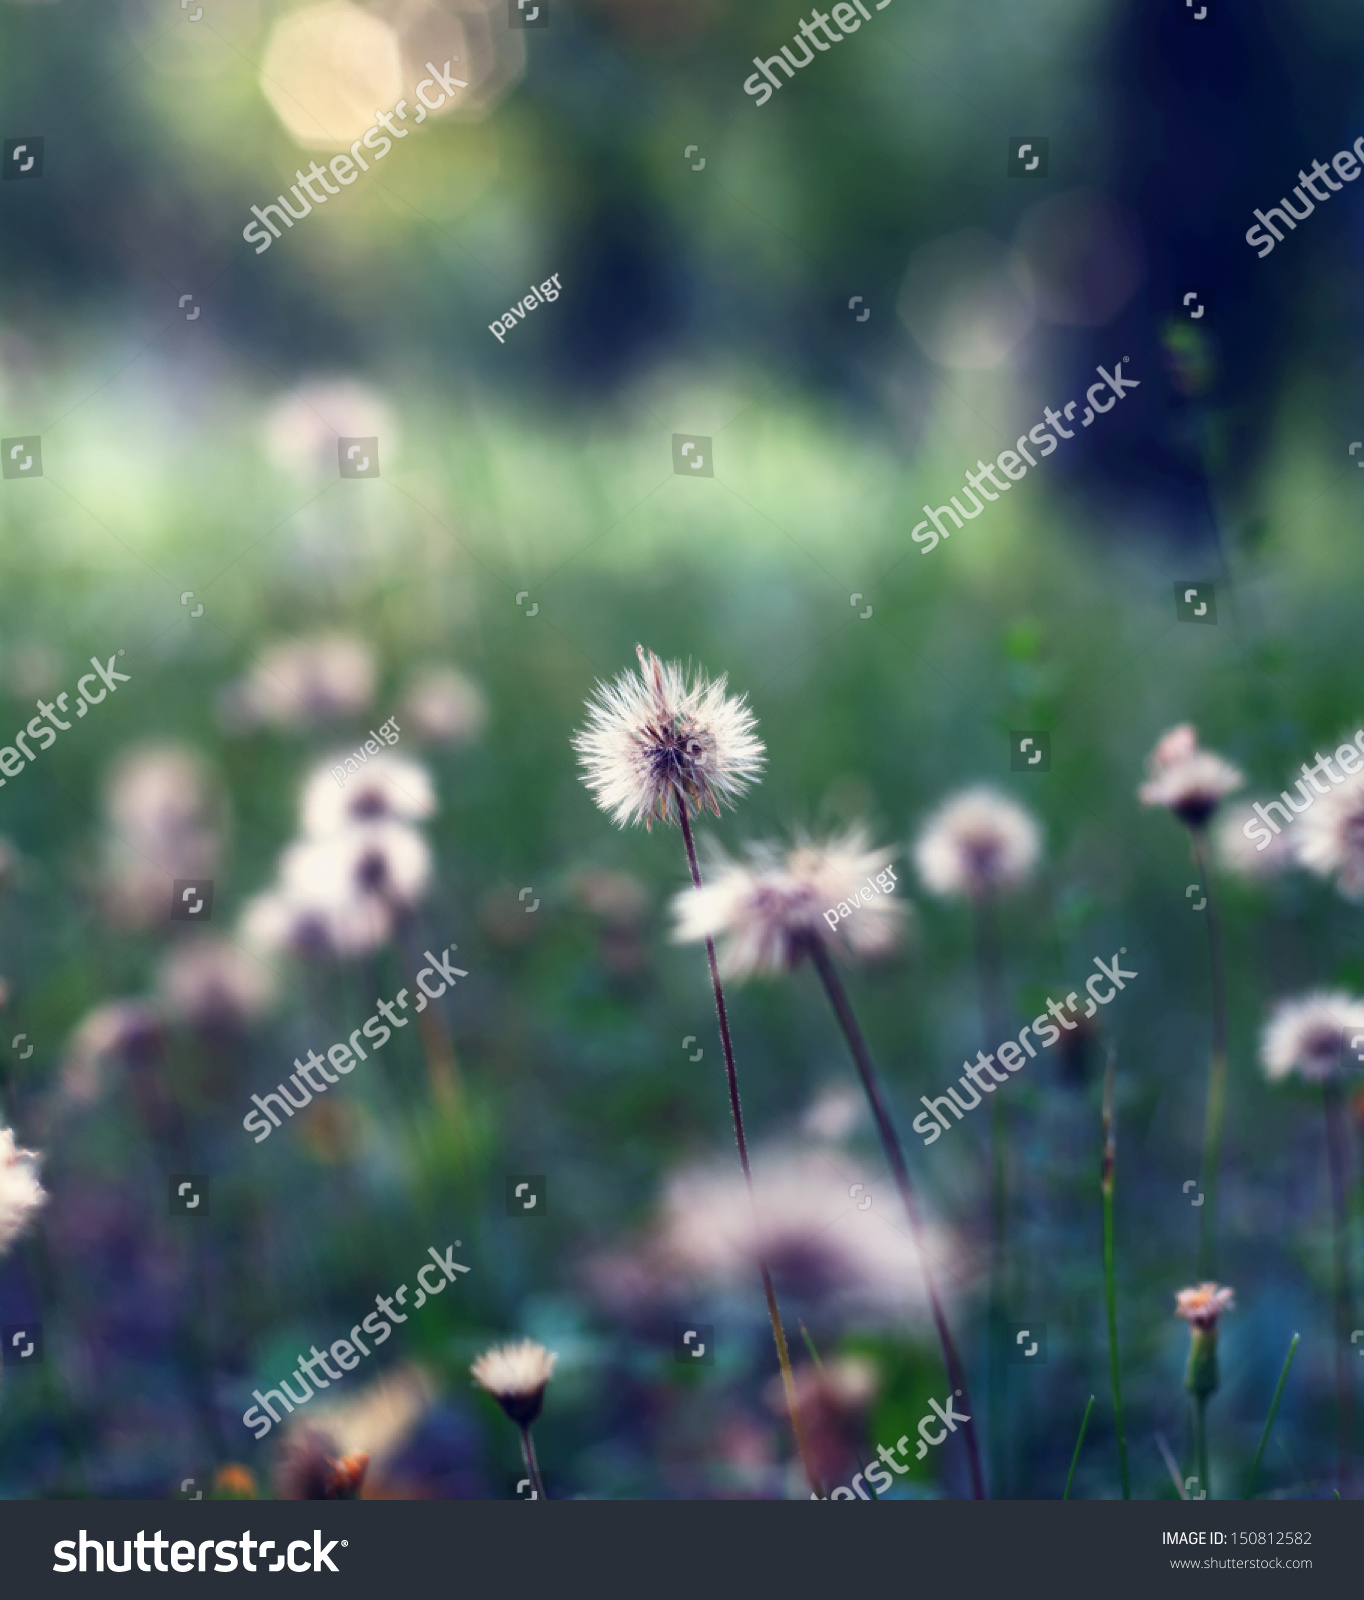 Tiny dandelions photo